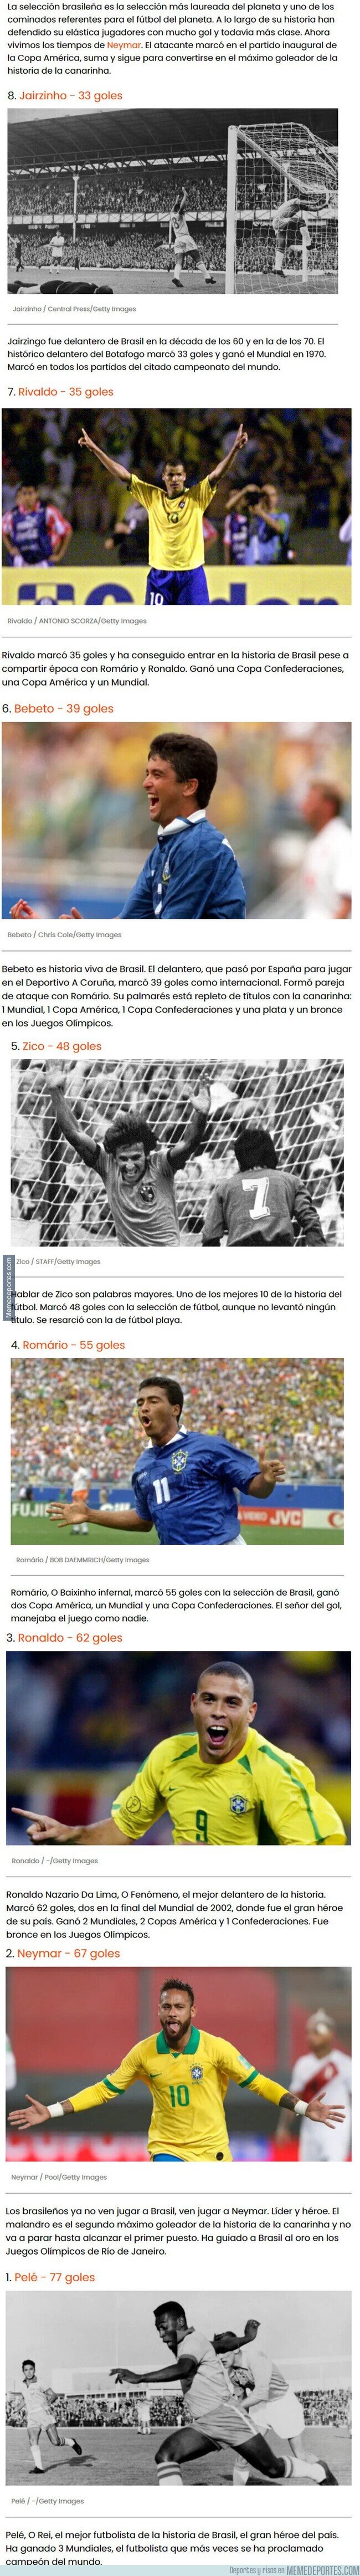 1137484 - Estos son los máximos goleadores de la historia de Brasil donde Neymar se acerca al número 1